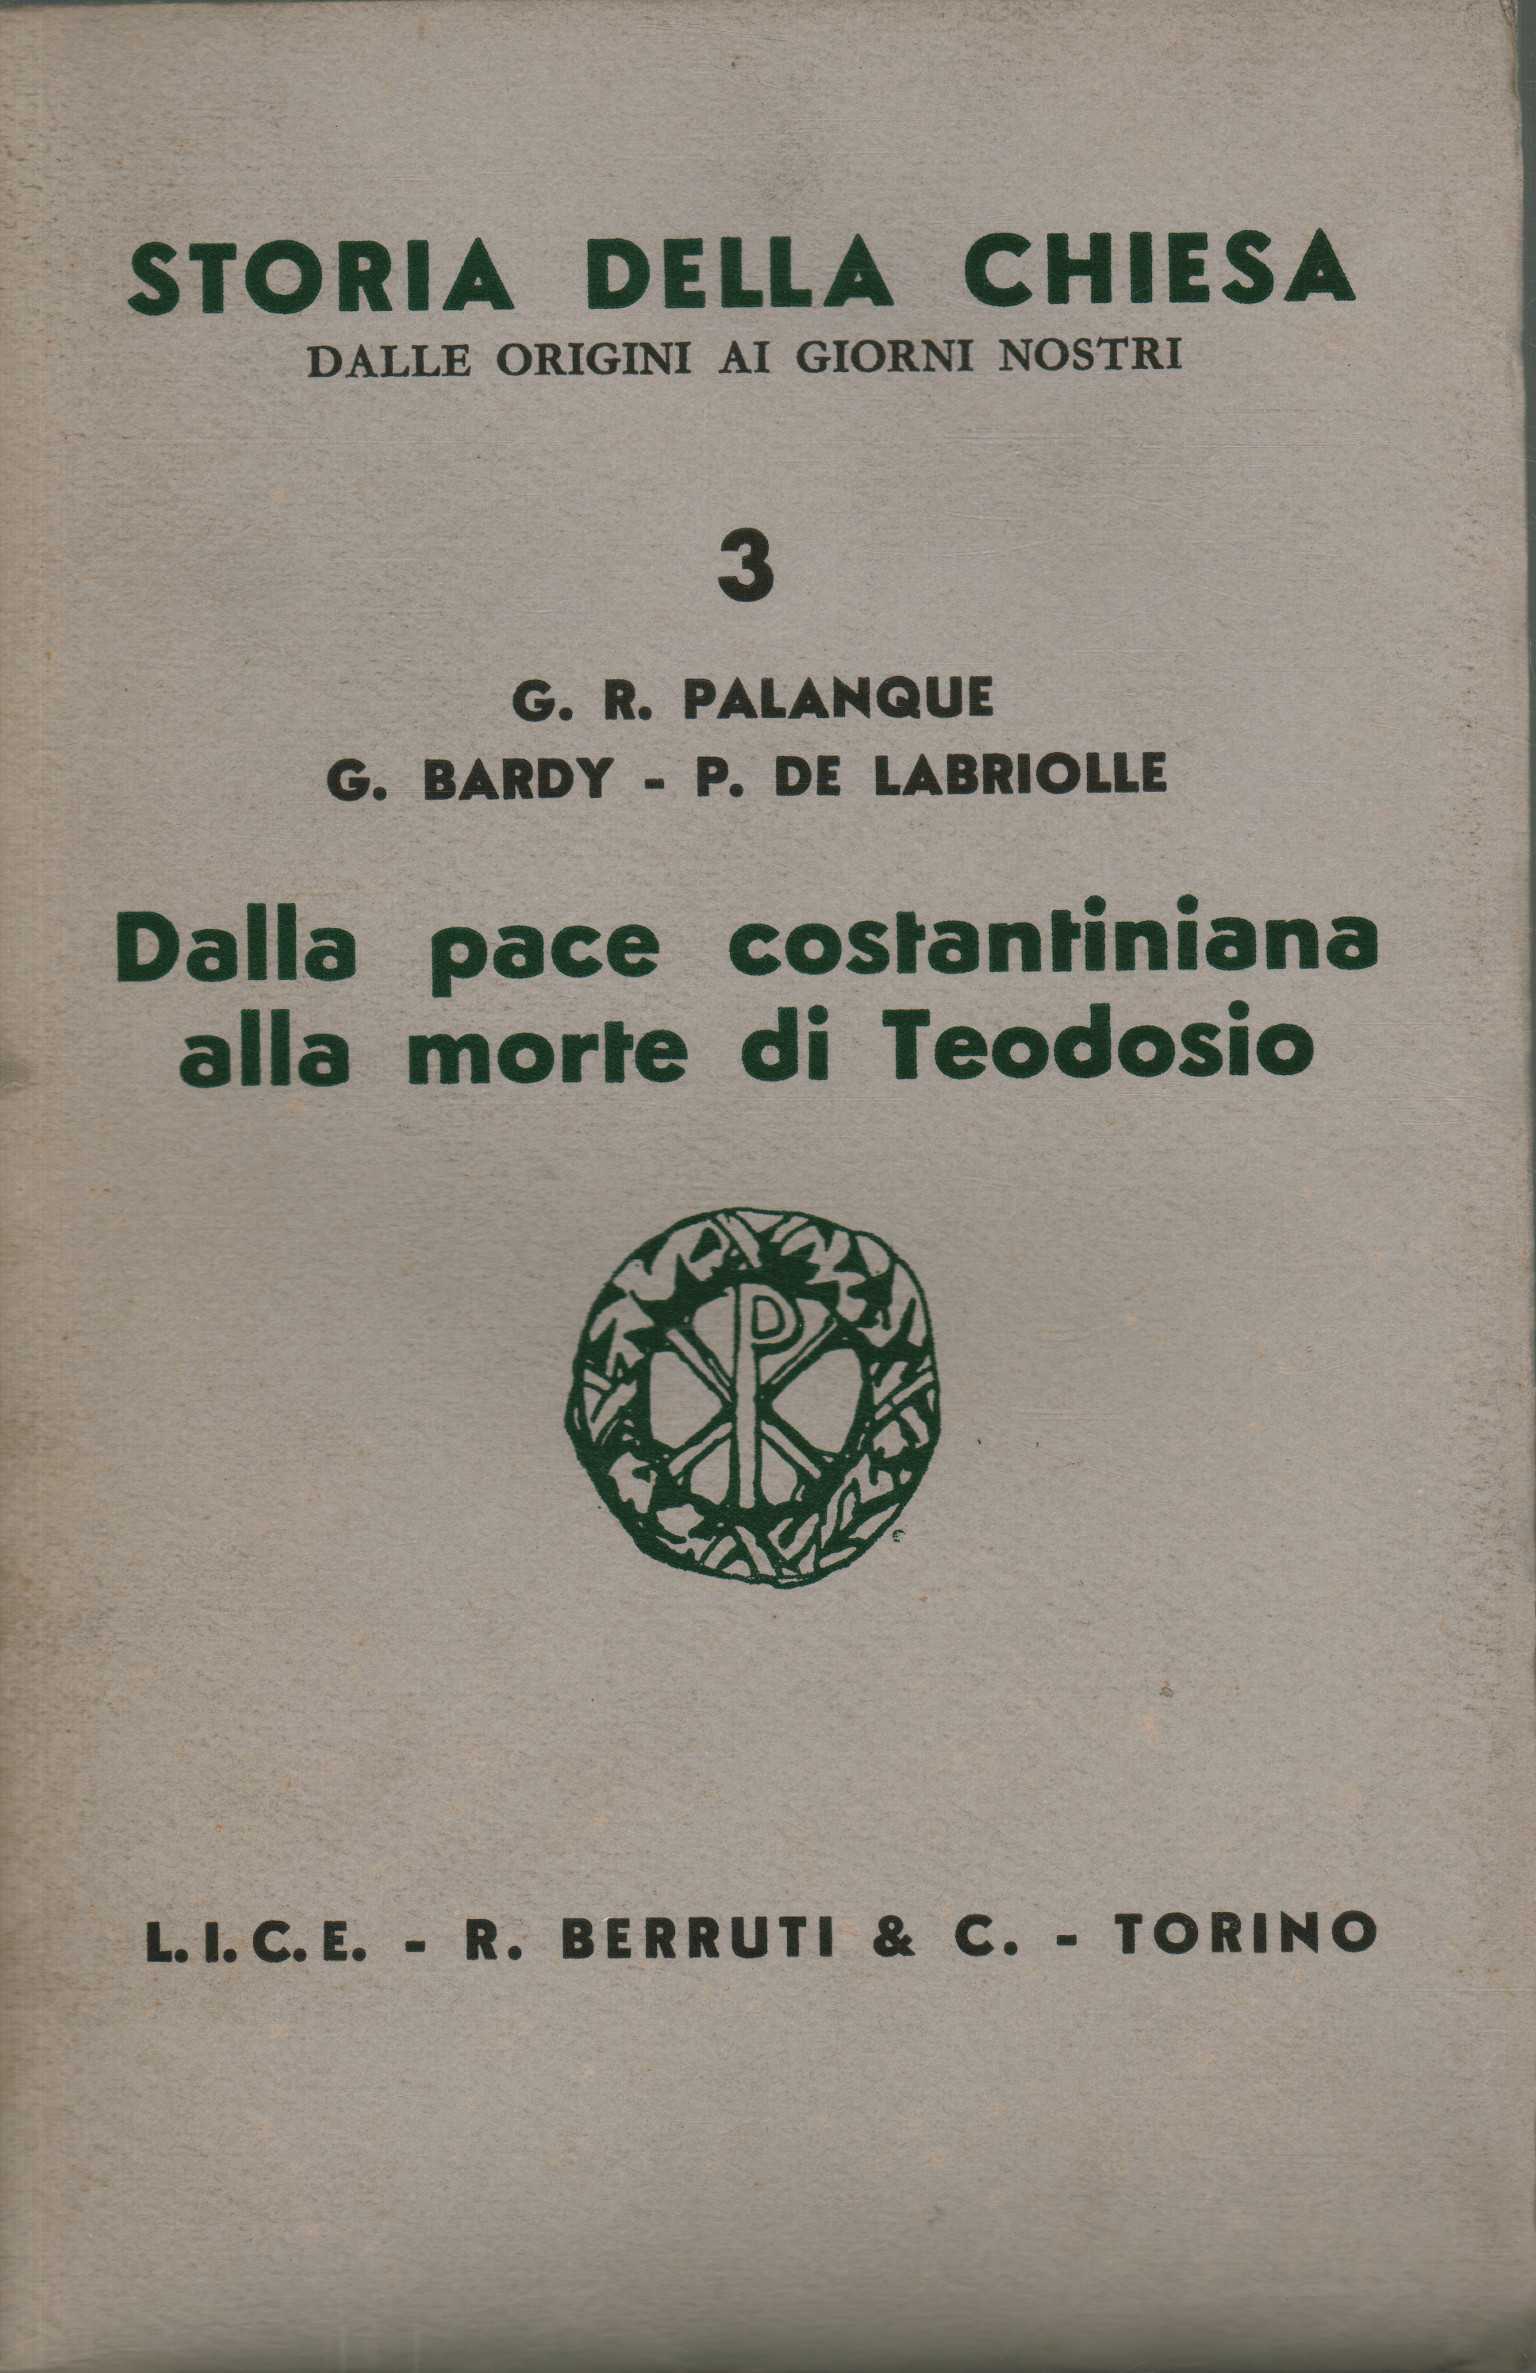 Dalla pace costantiniana alla morte di Teodosio, G.R. Palanque G. Bardy P. De Labriolle